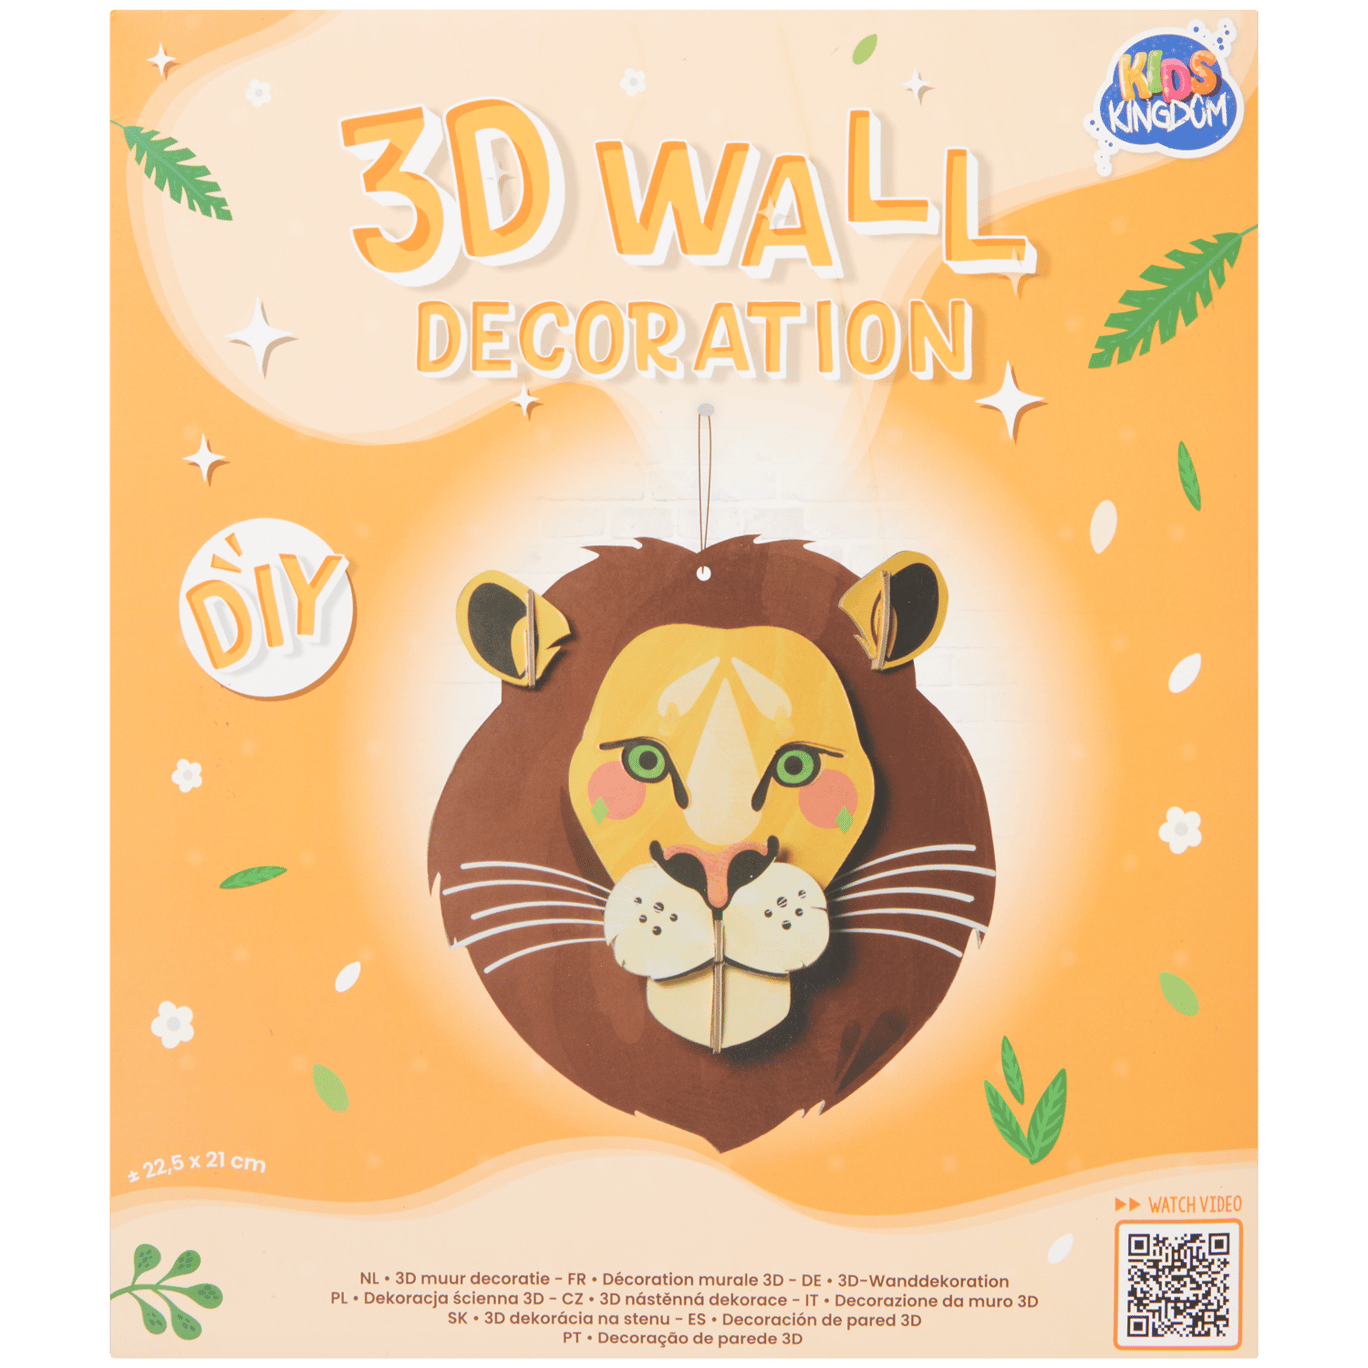 Kids Kingdom maak je eigen 3D-wanddecoratie